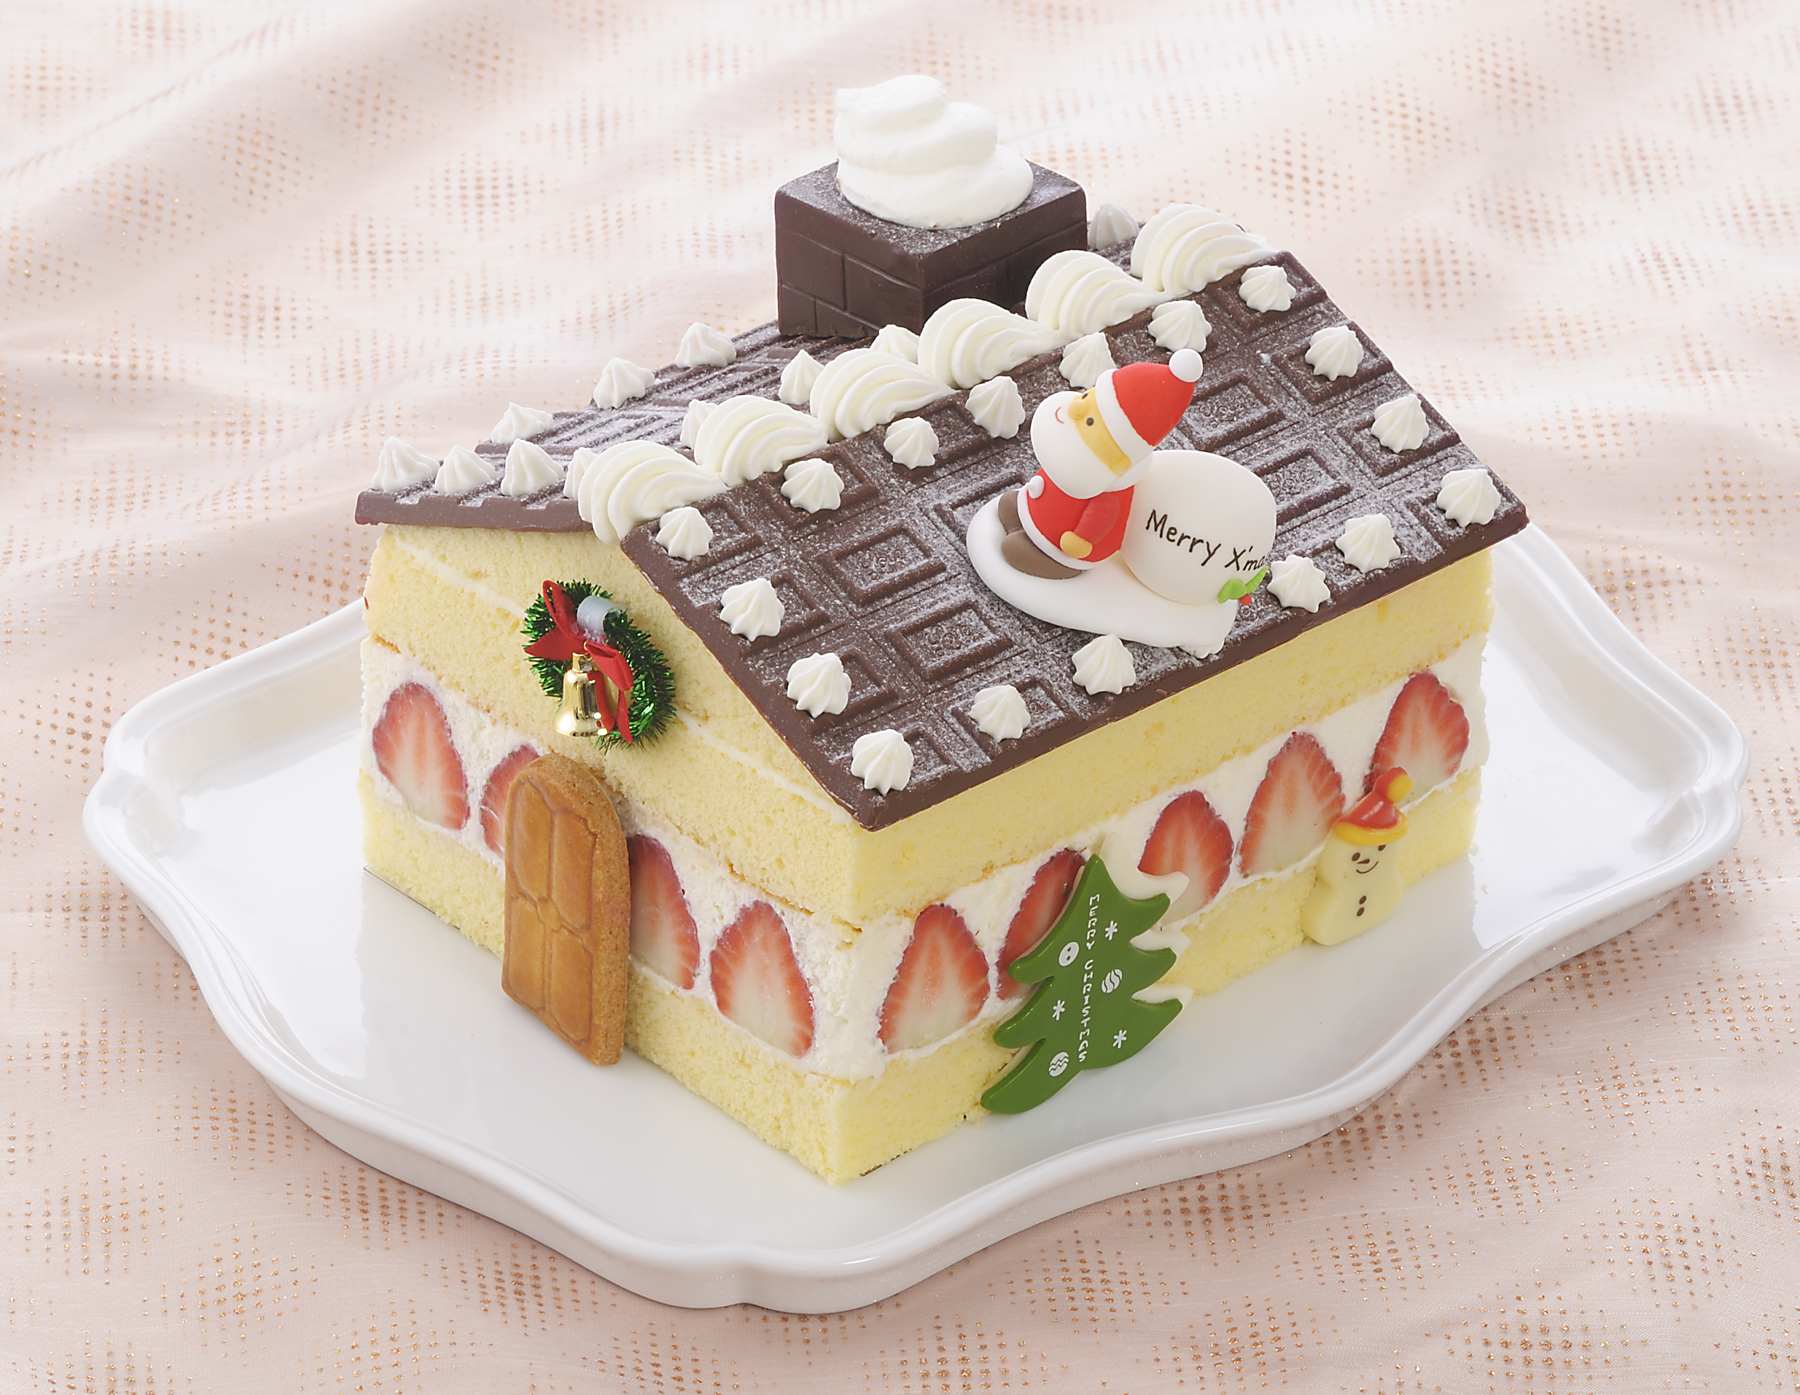 キッズのイラストが本物のクリスマスケーキに 14 Kid S Dream Cake 予約受付開始 株式会社銀座コージーコーナーのプレスリリース